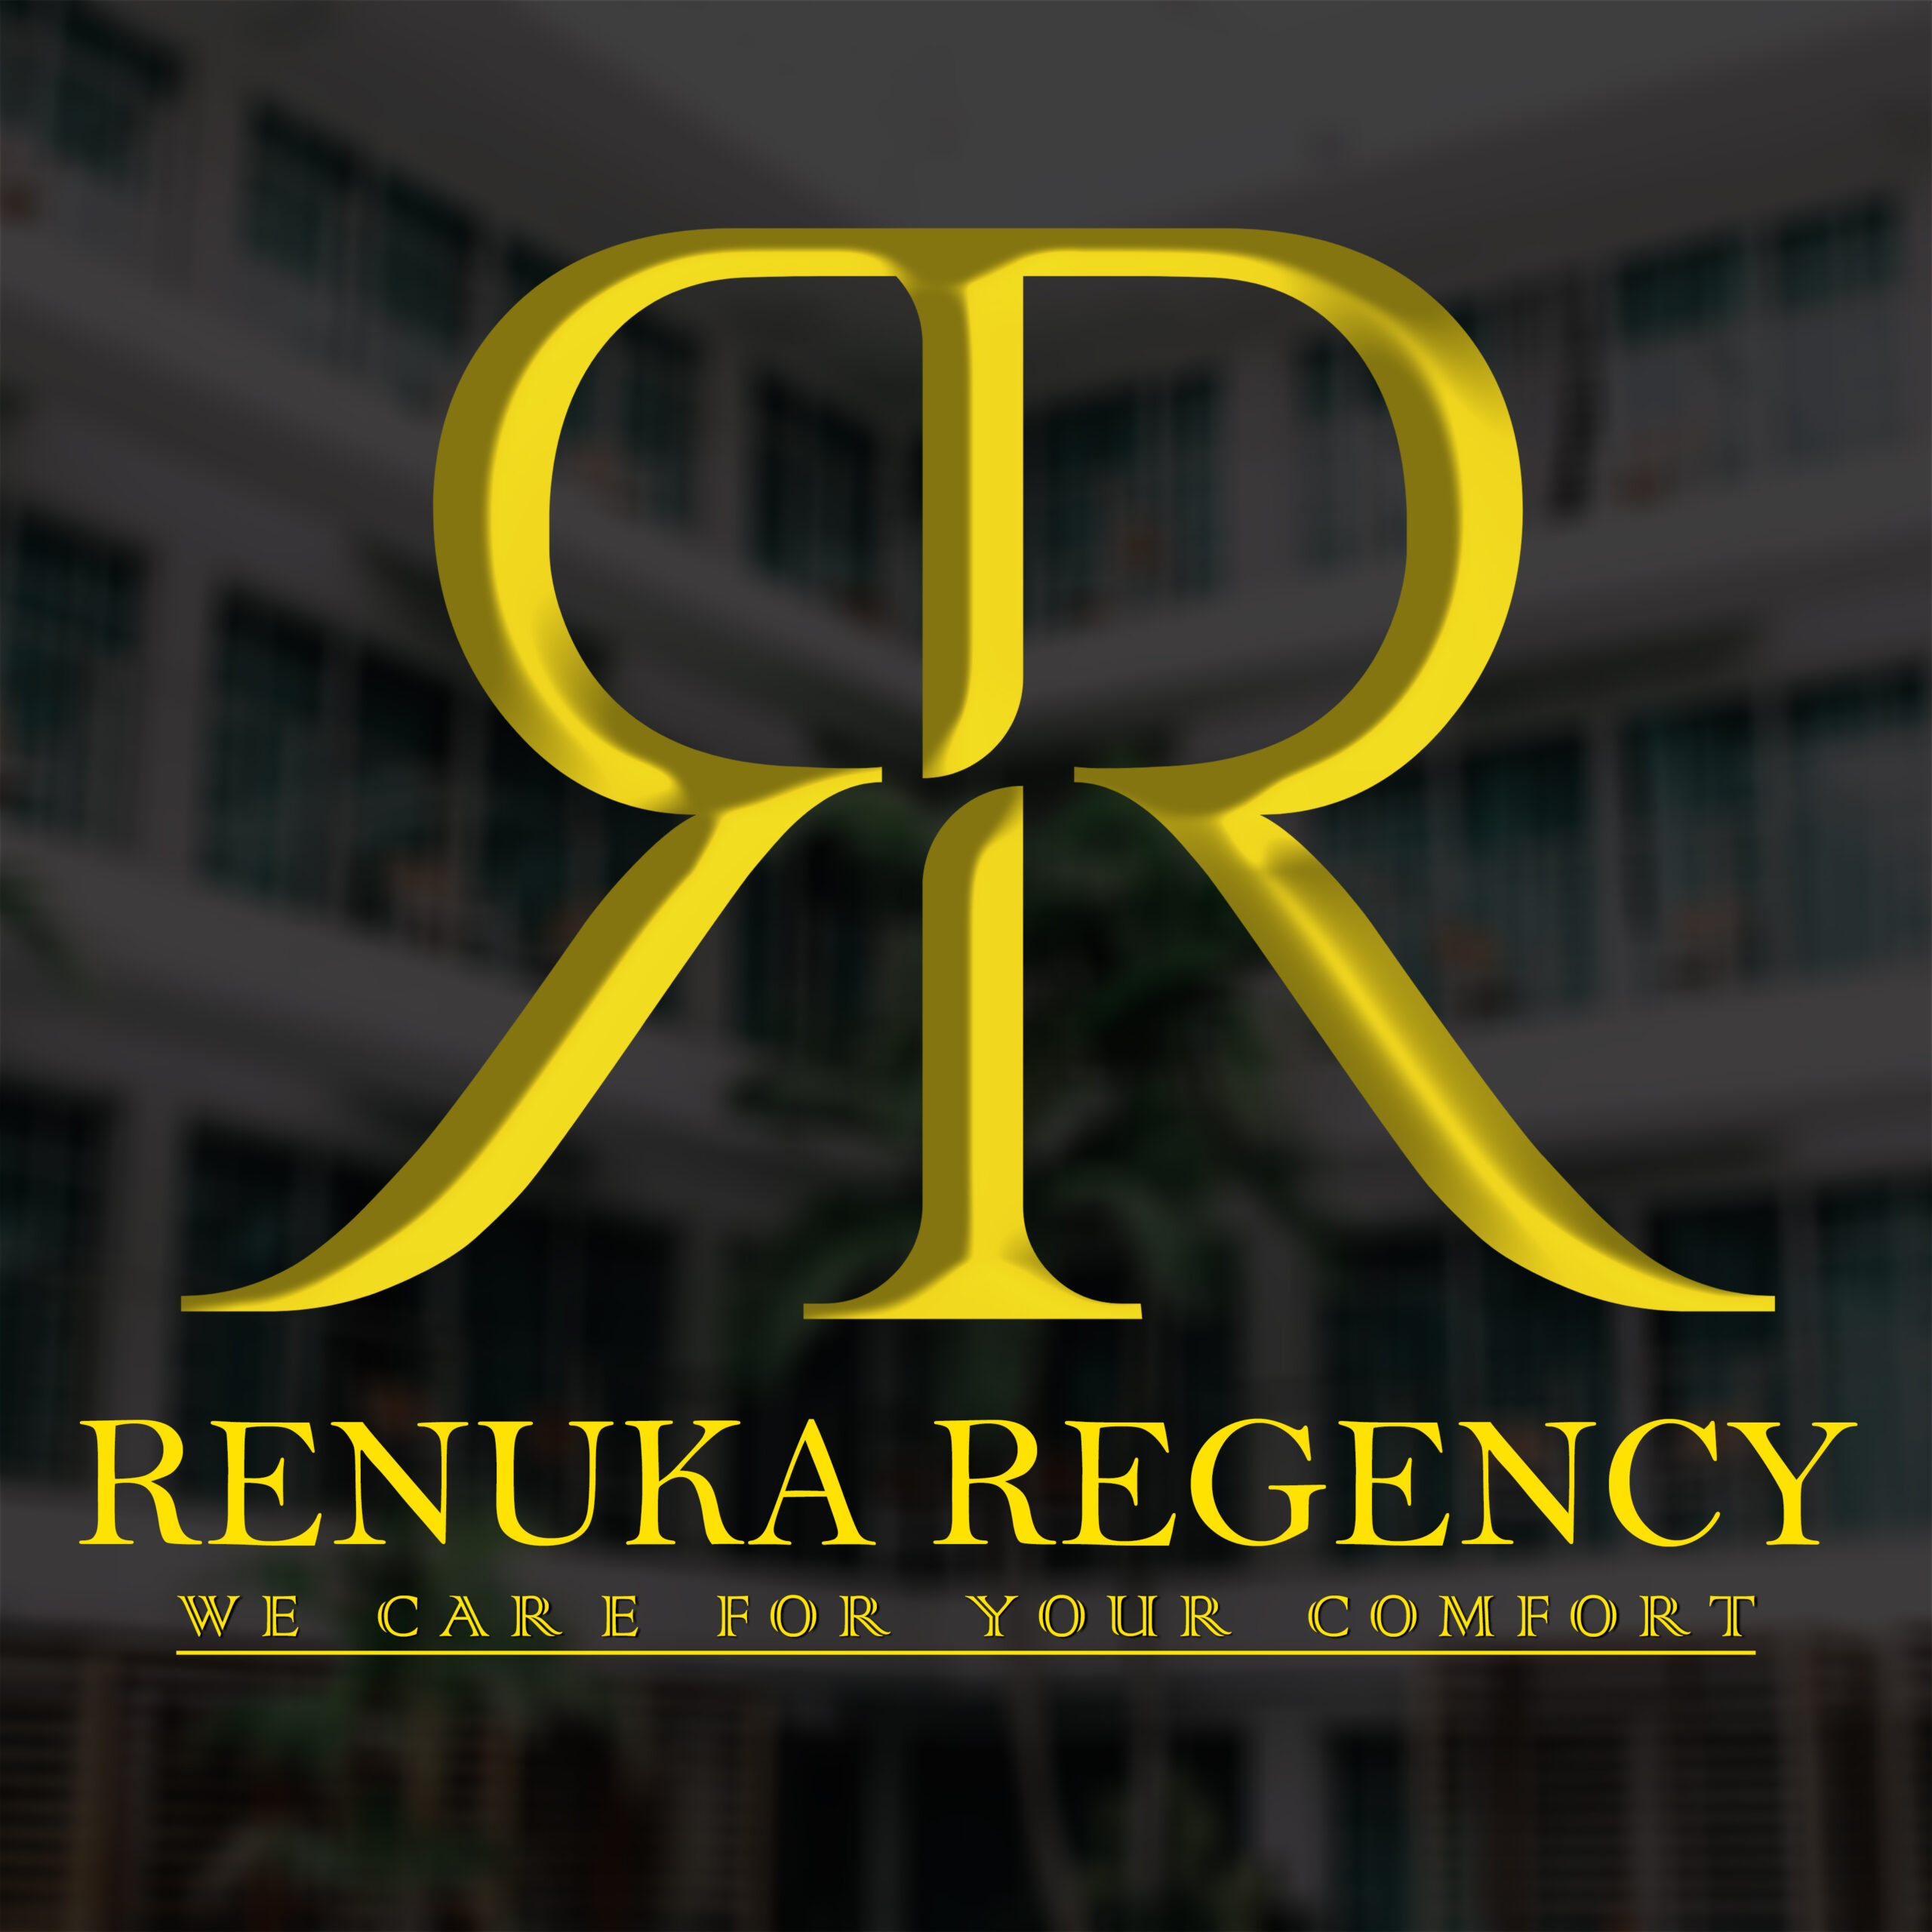 Renuka Regency